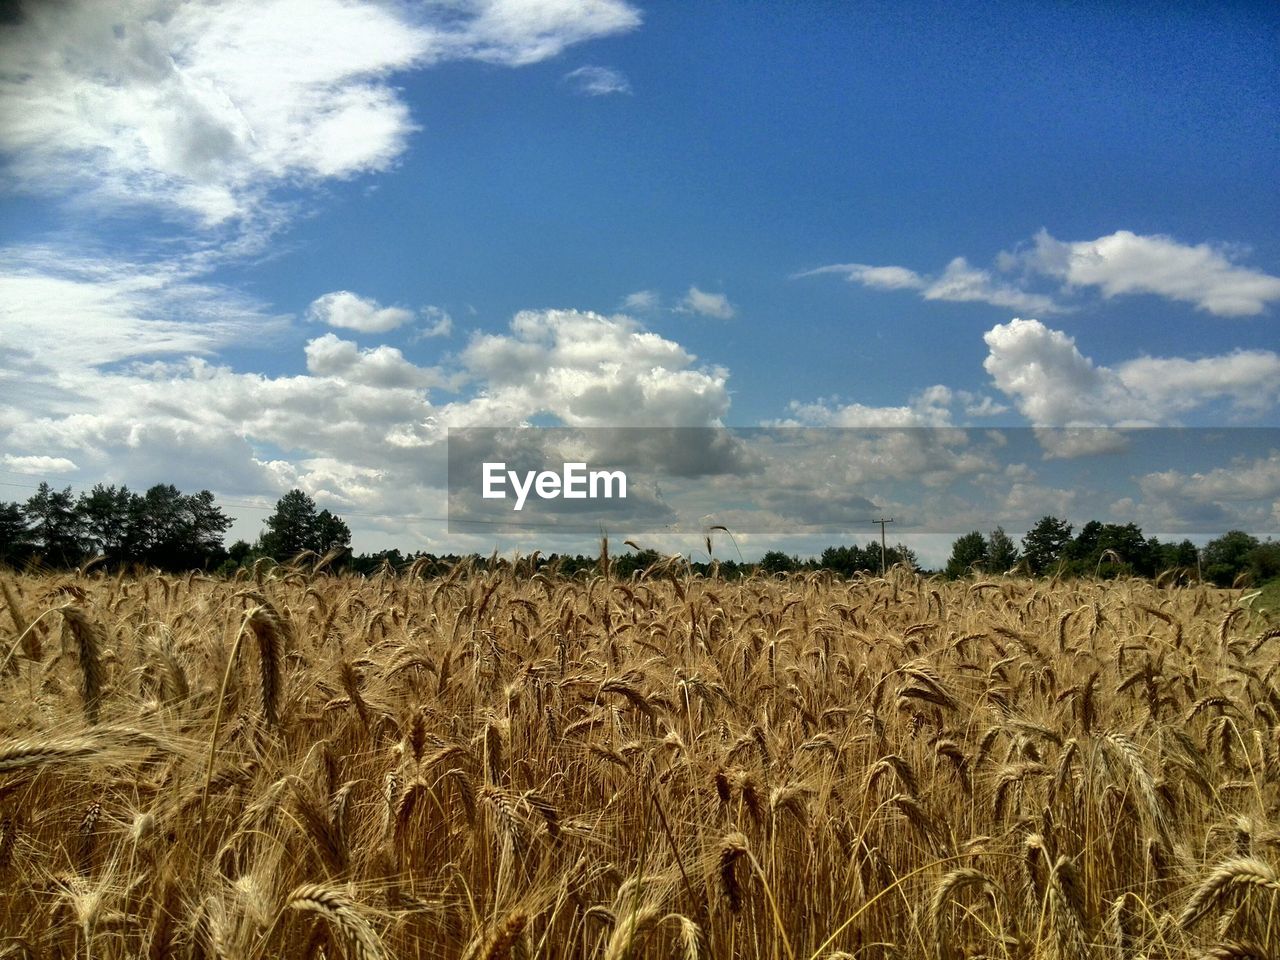 Barley growing in field against cloudy sky